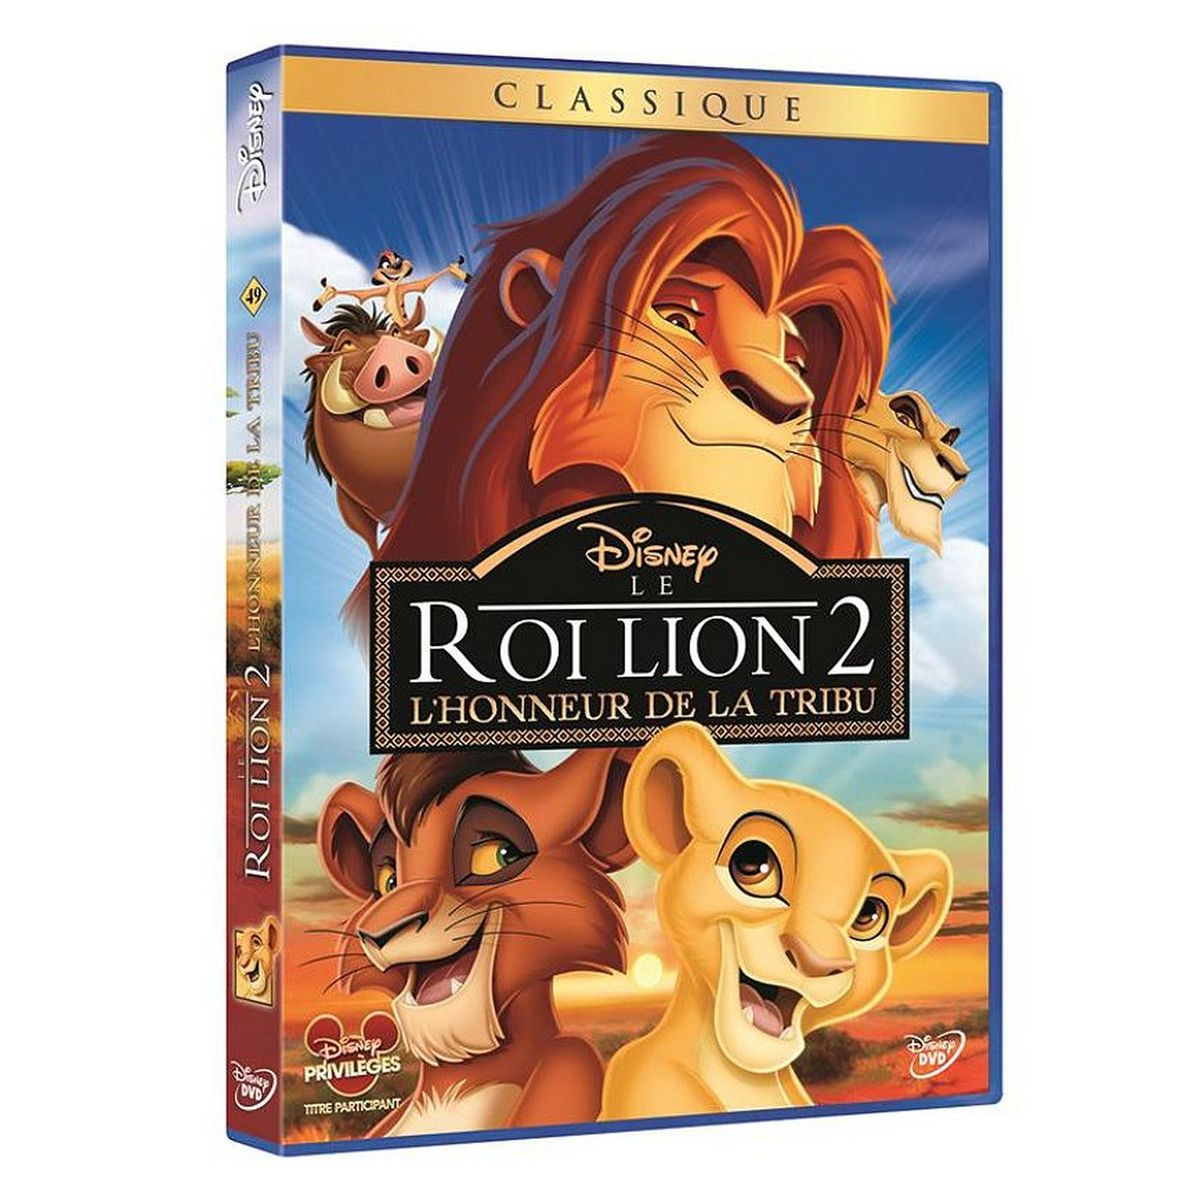 Le Roi Lion 2 - L'honneur de la tribu DVD